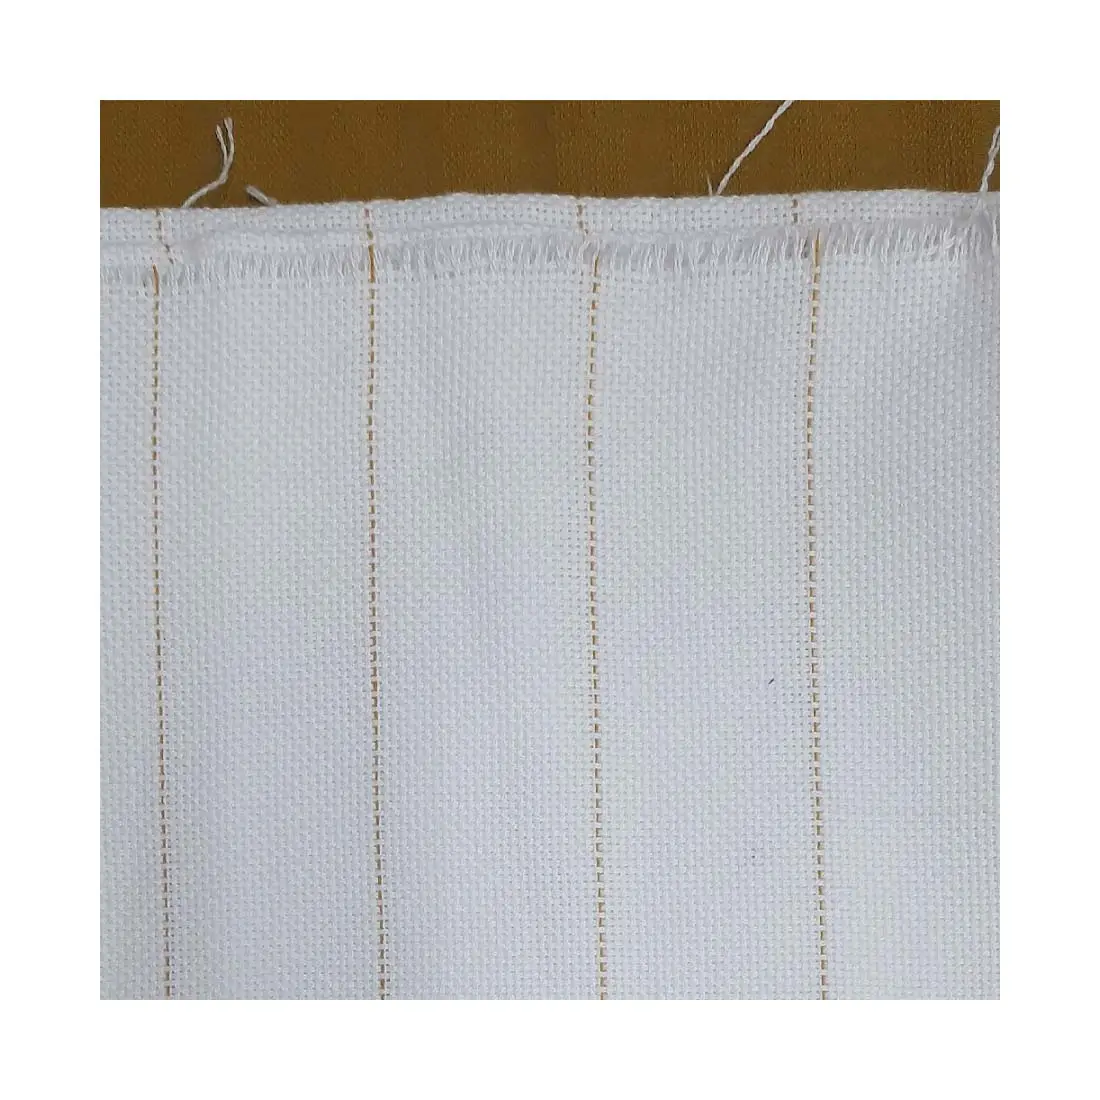 La mejor calidad 100% algodón reciclado PET poliéster monjes tela con línea dorada telas bordadas a mano y mechones reutilizables